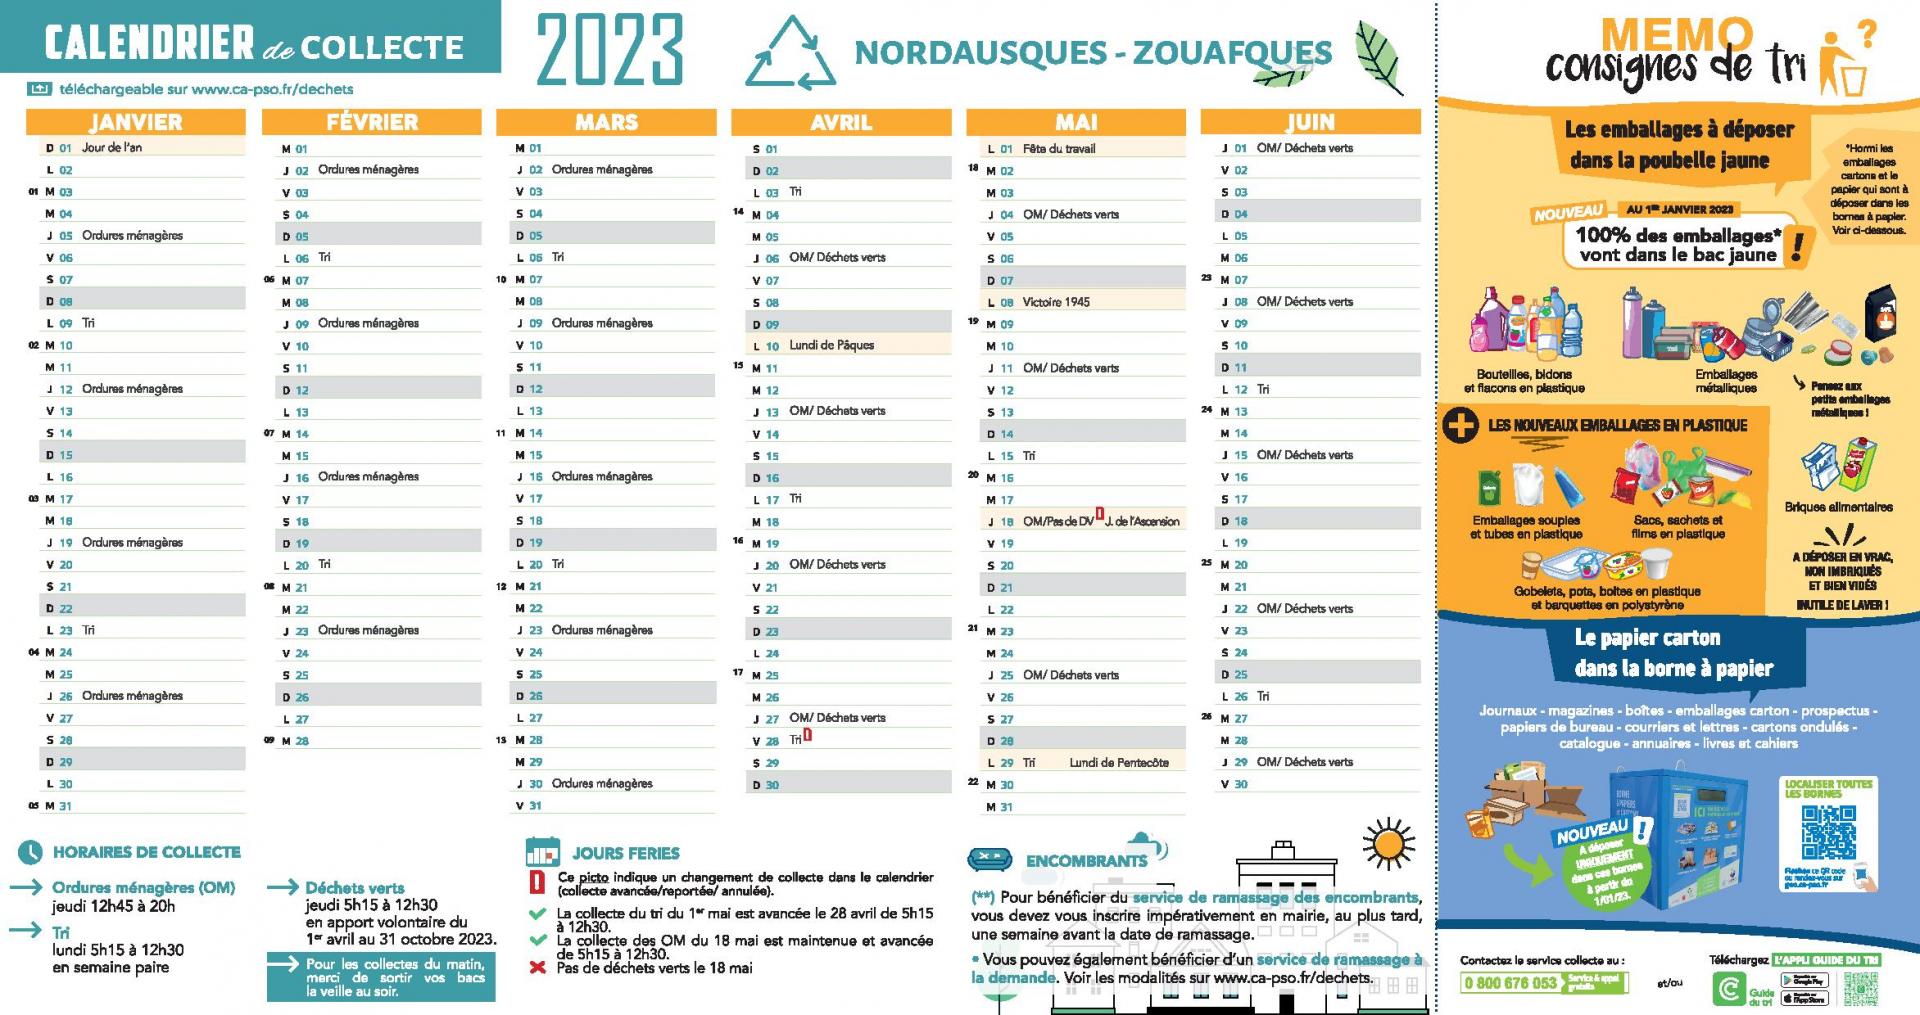 Nordausques zouafques calendrier de collecte 2023 page 001